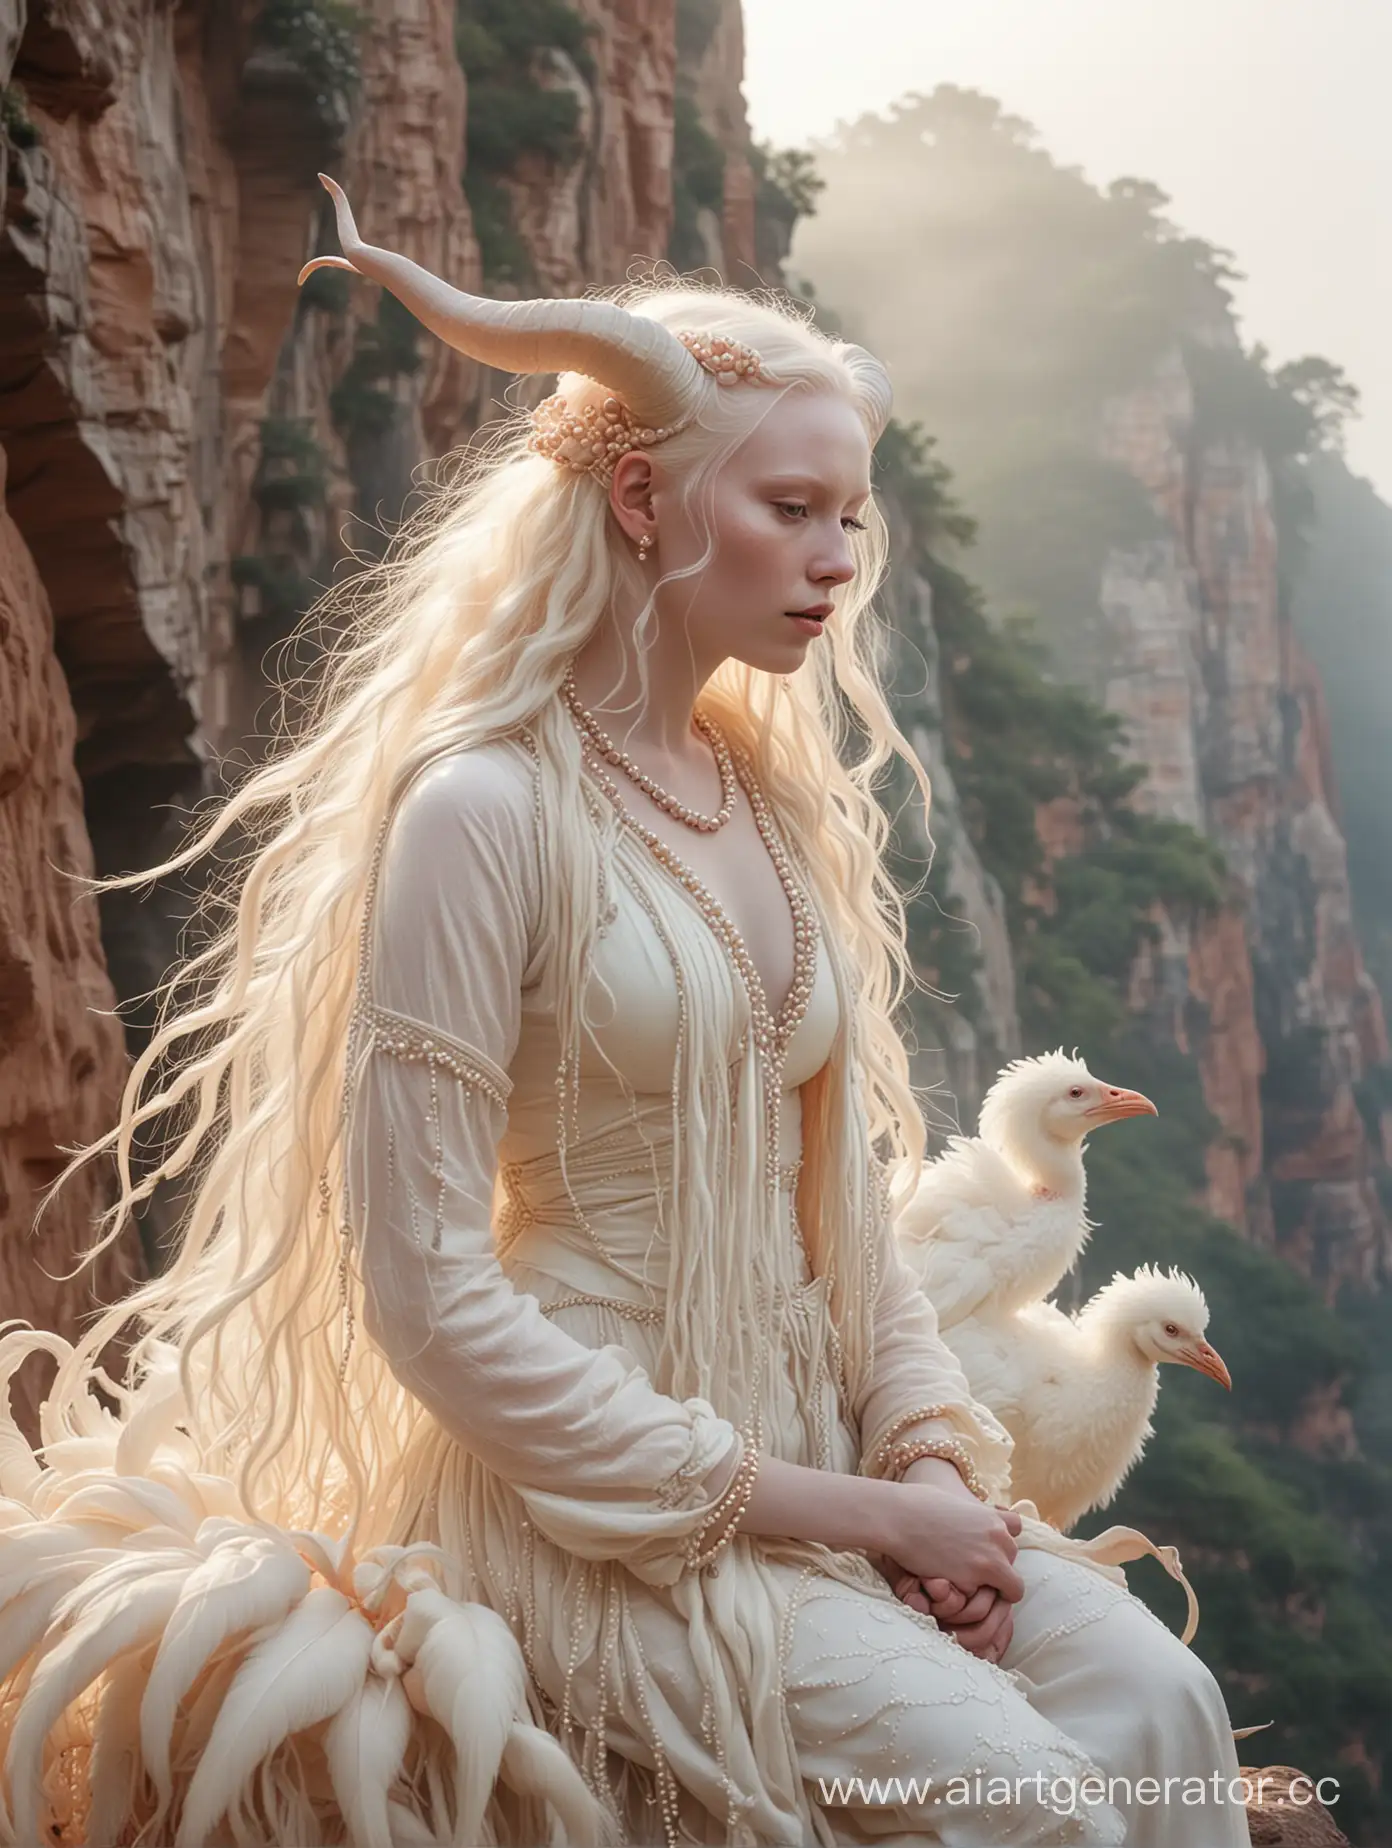 Majestic-Albino-Woman-Riding-Fluffy-Dodo-Bird-on-Cliff-Edge-at-Dawn